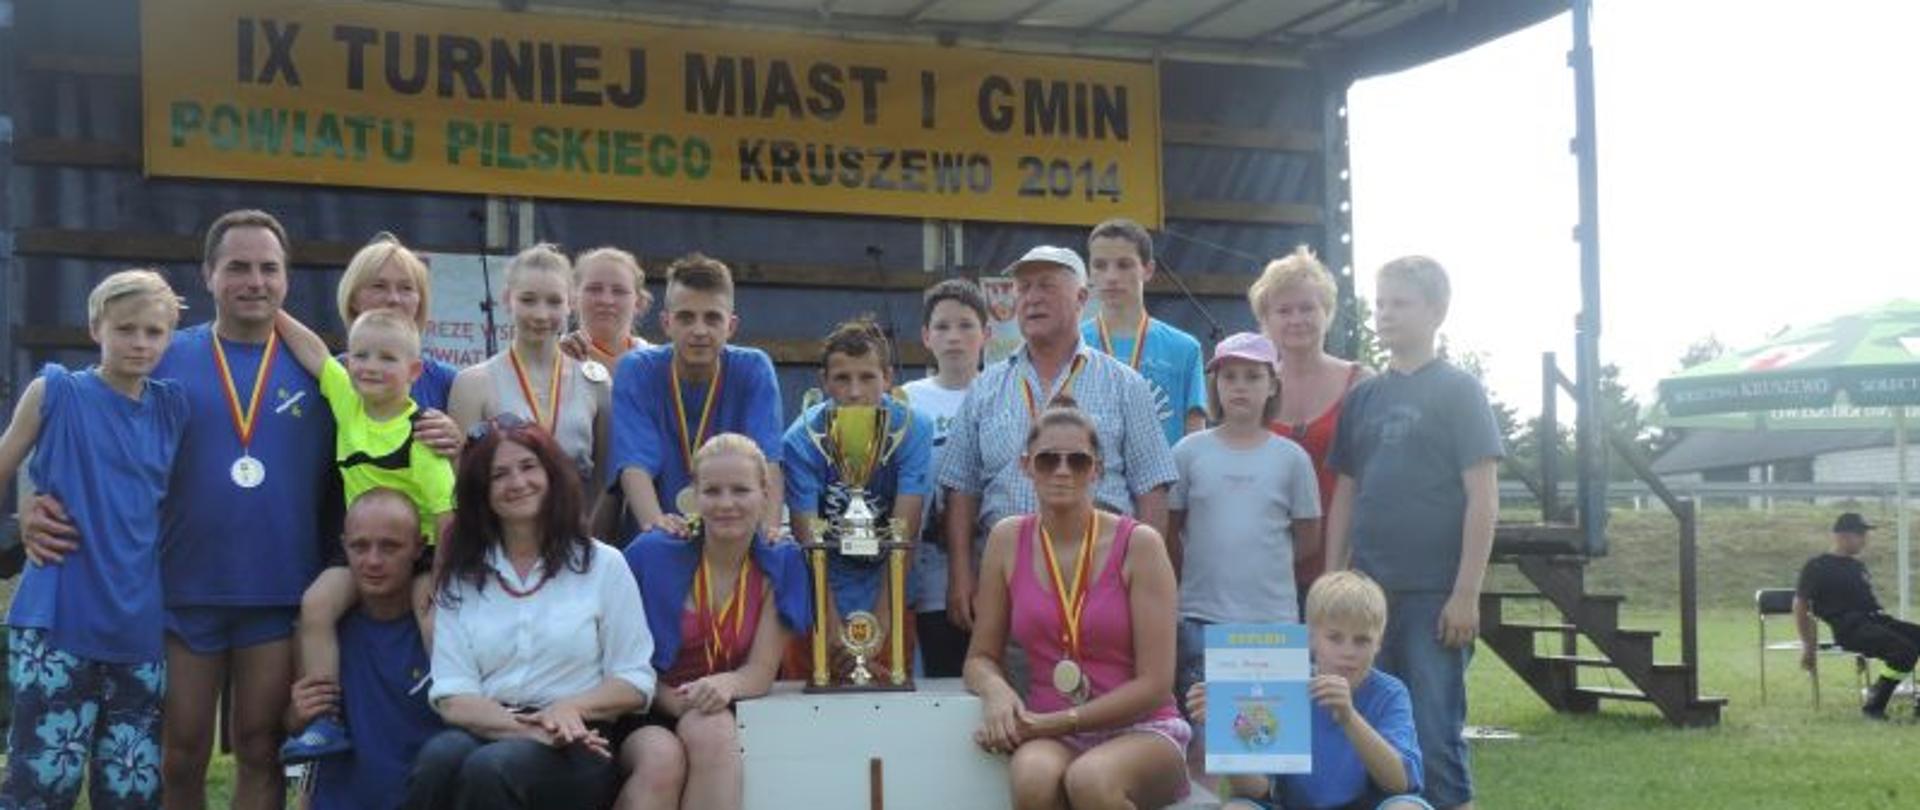 Turniej Miast i Gmin Powiatu Pilskiego